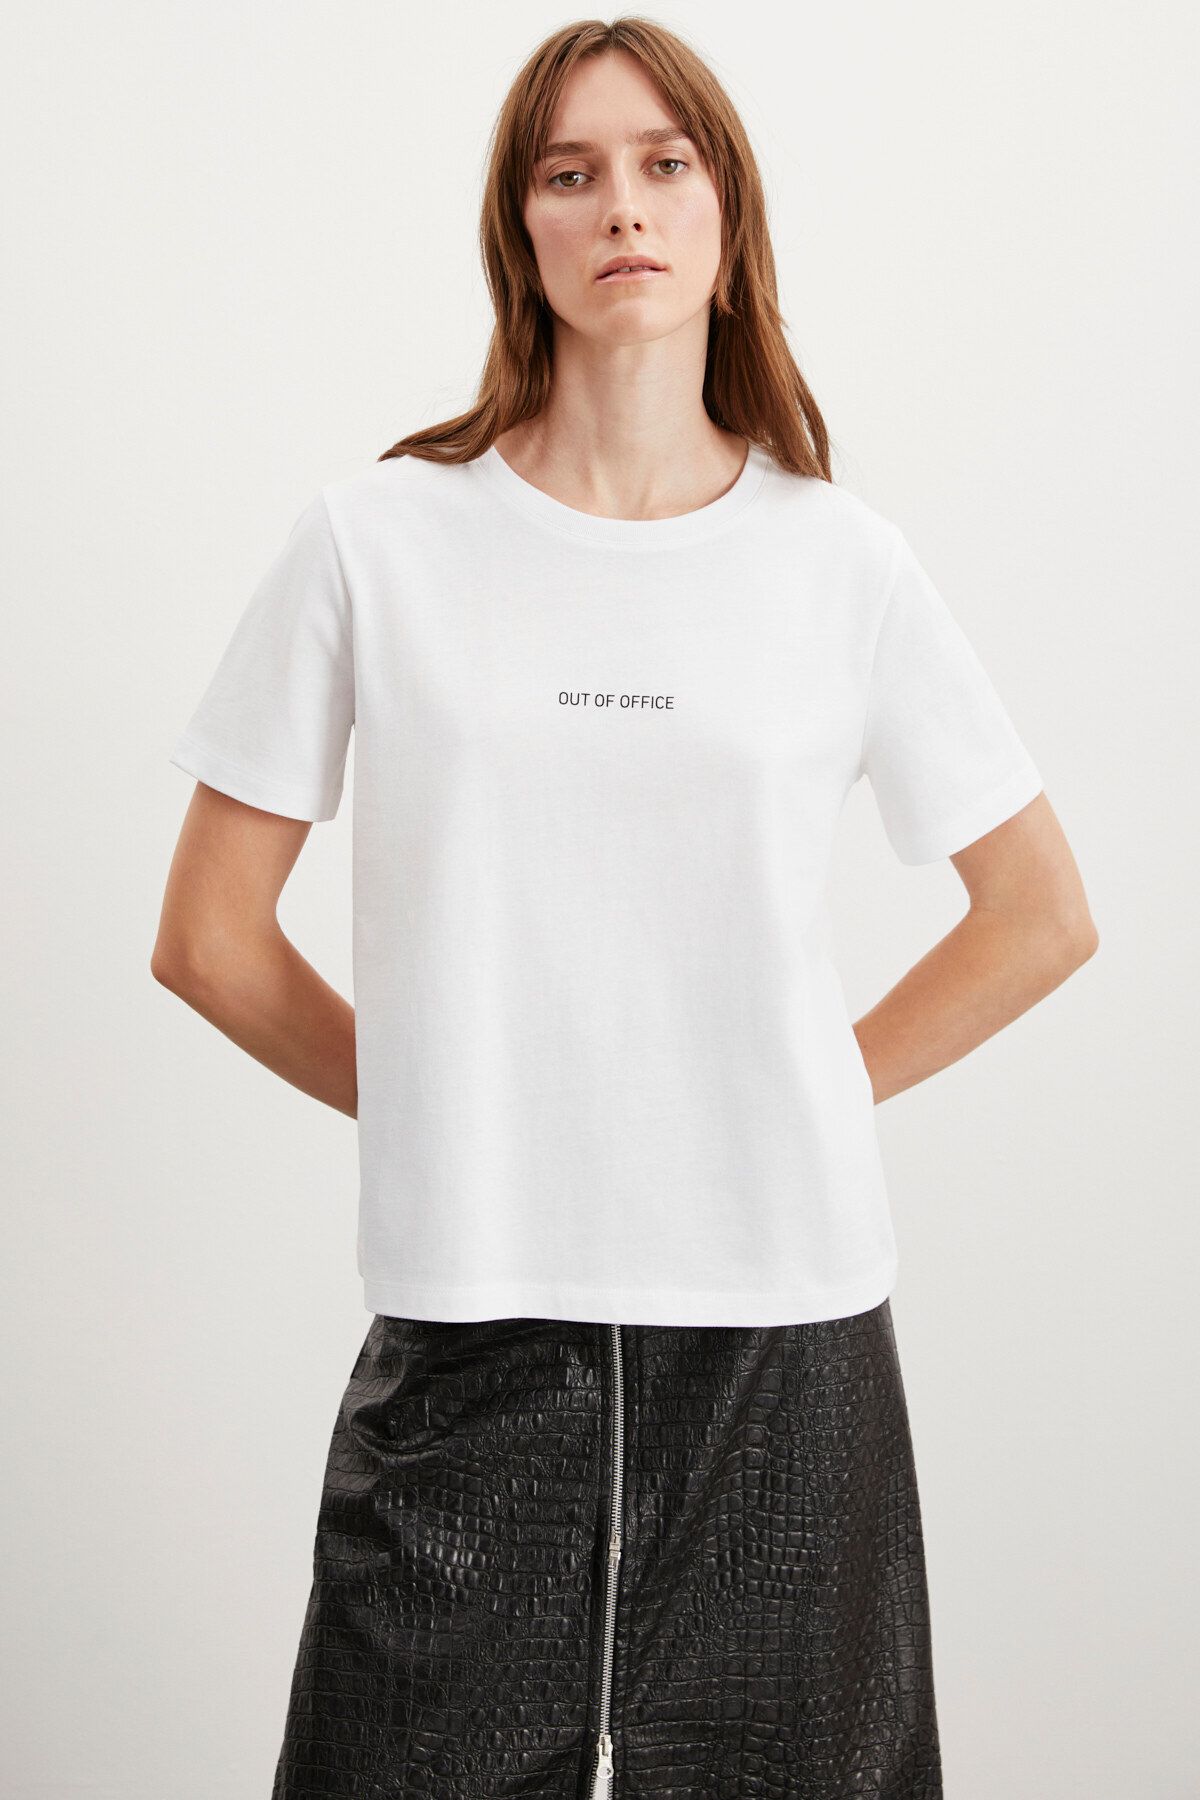 GRIMELANGE Glenda Kadın Bisiklet Yaka %100 Pamuk Nakış Işlemeli Beyaz T-shirt